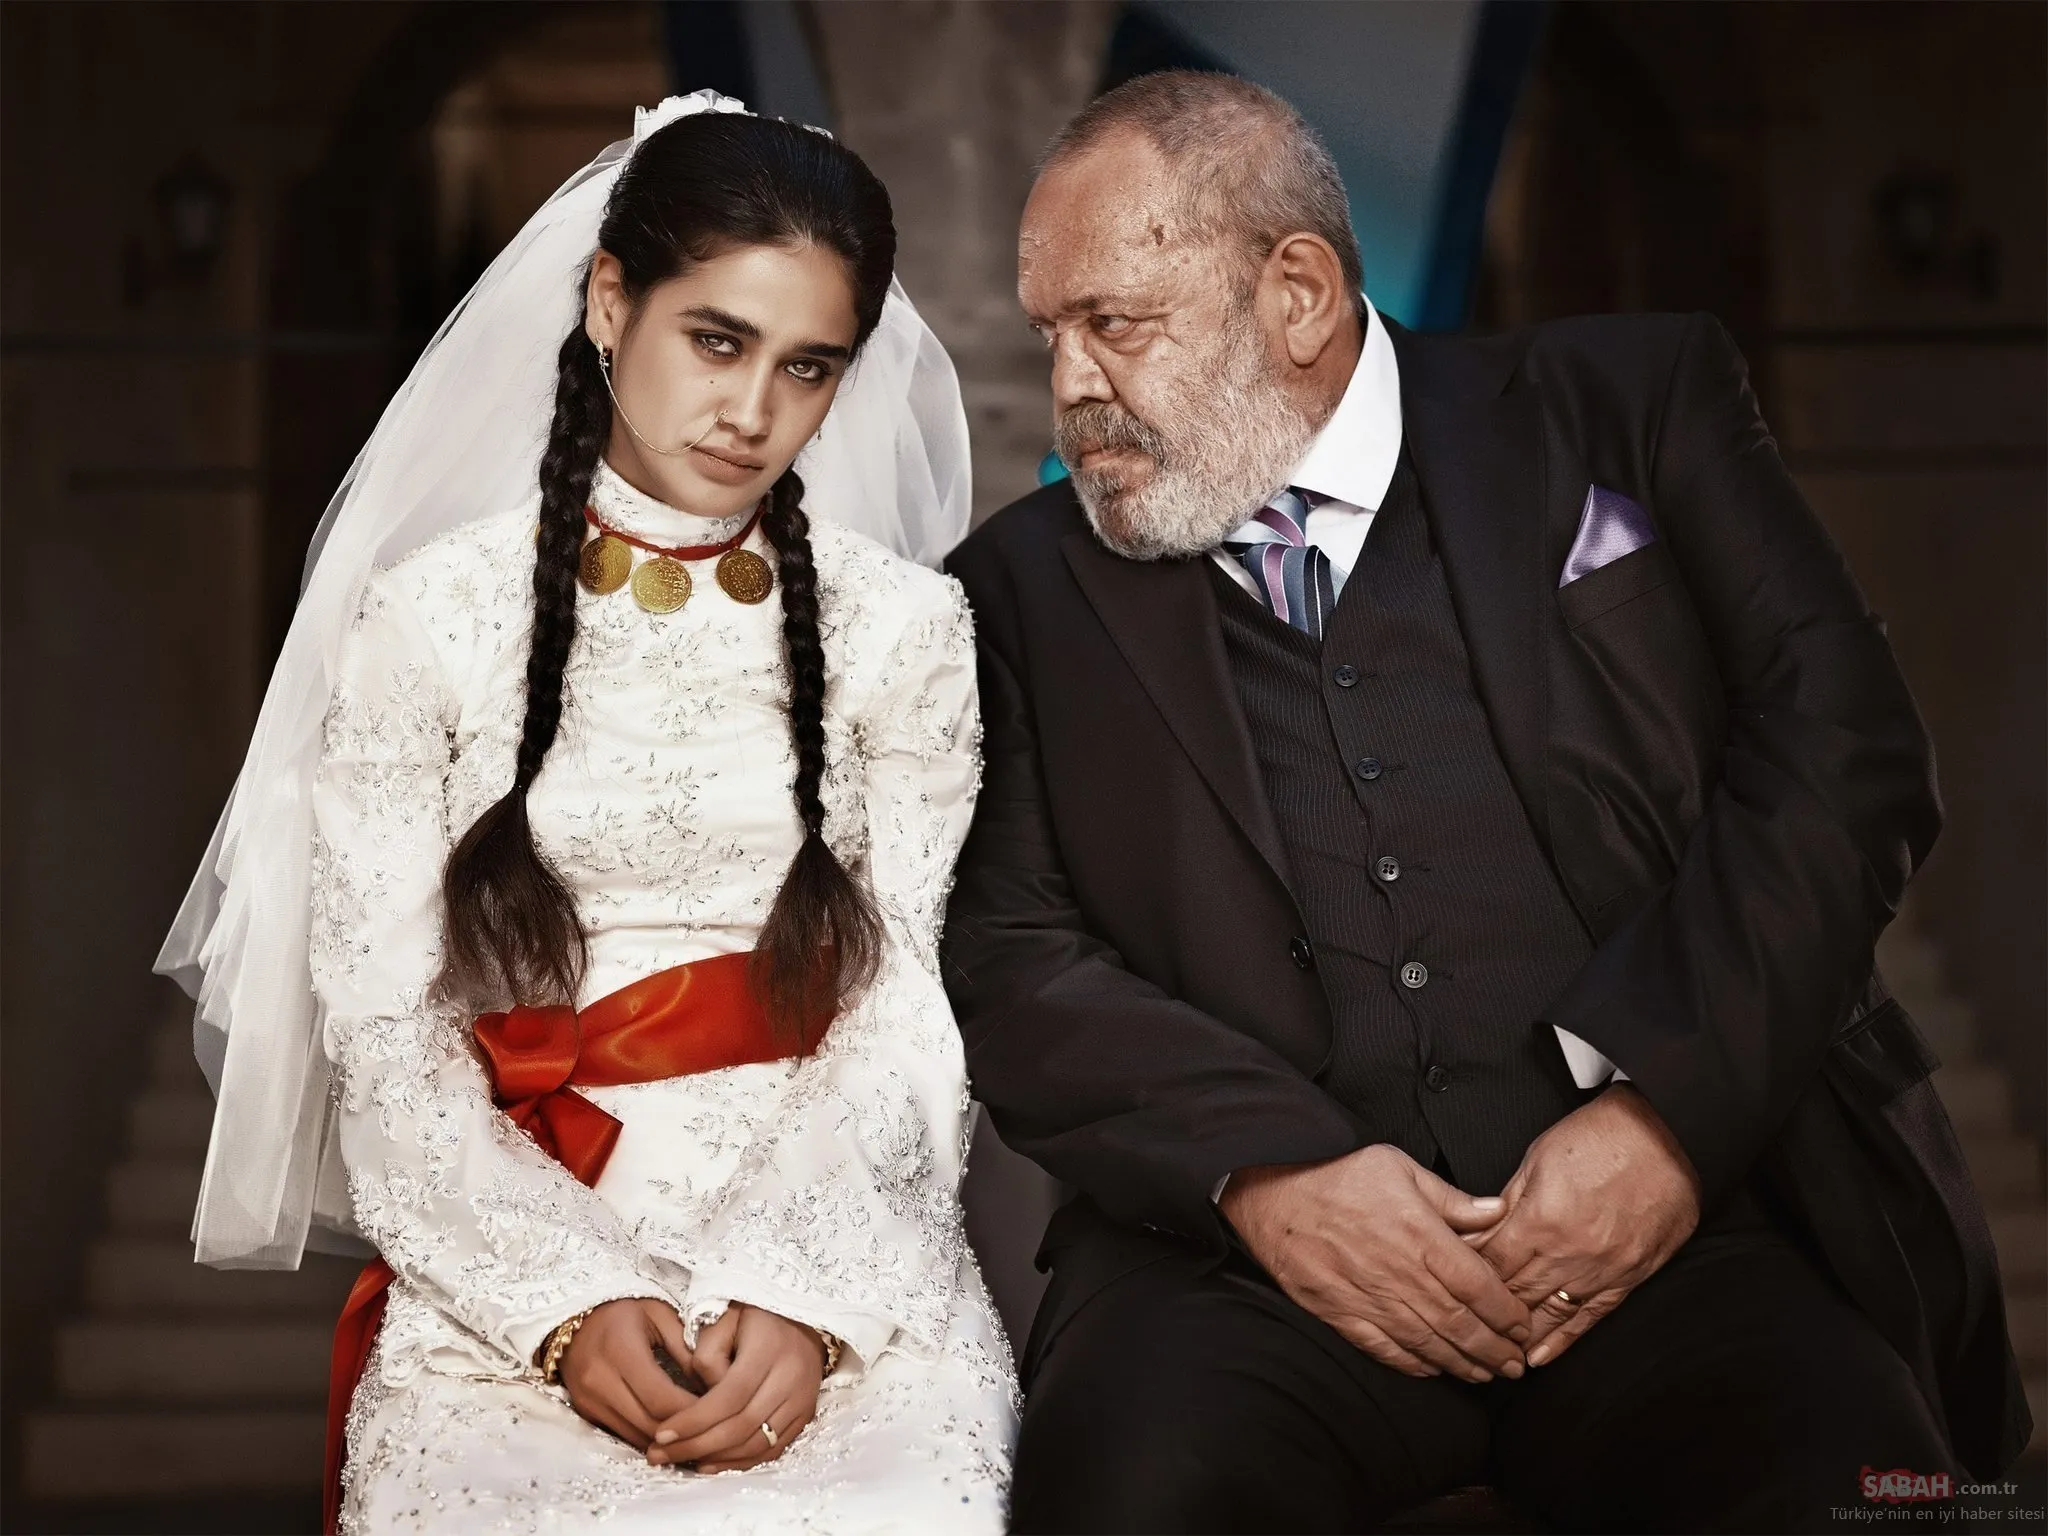 Meltem Miraloğlu муж. Мерьем Миралоглу. Папа дочку отдает